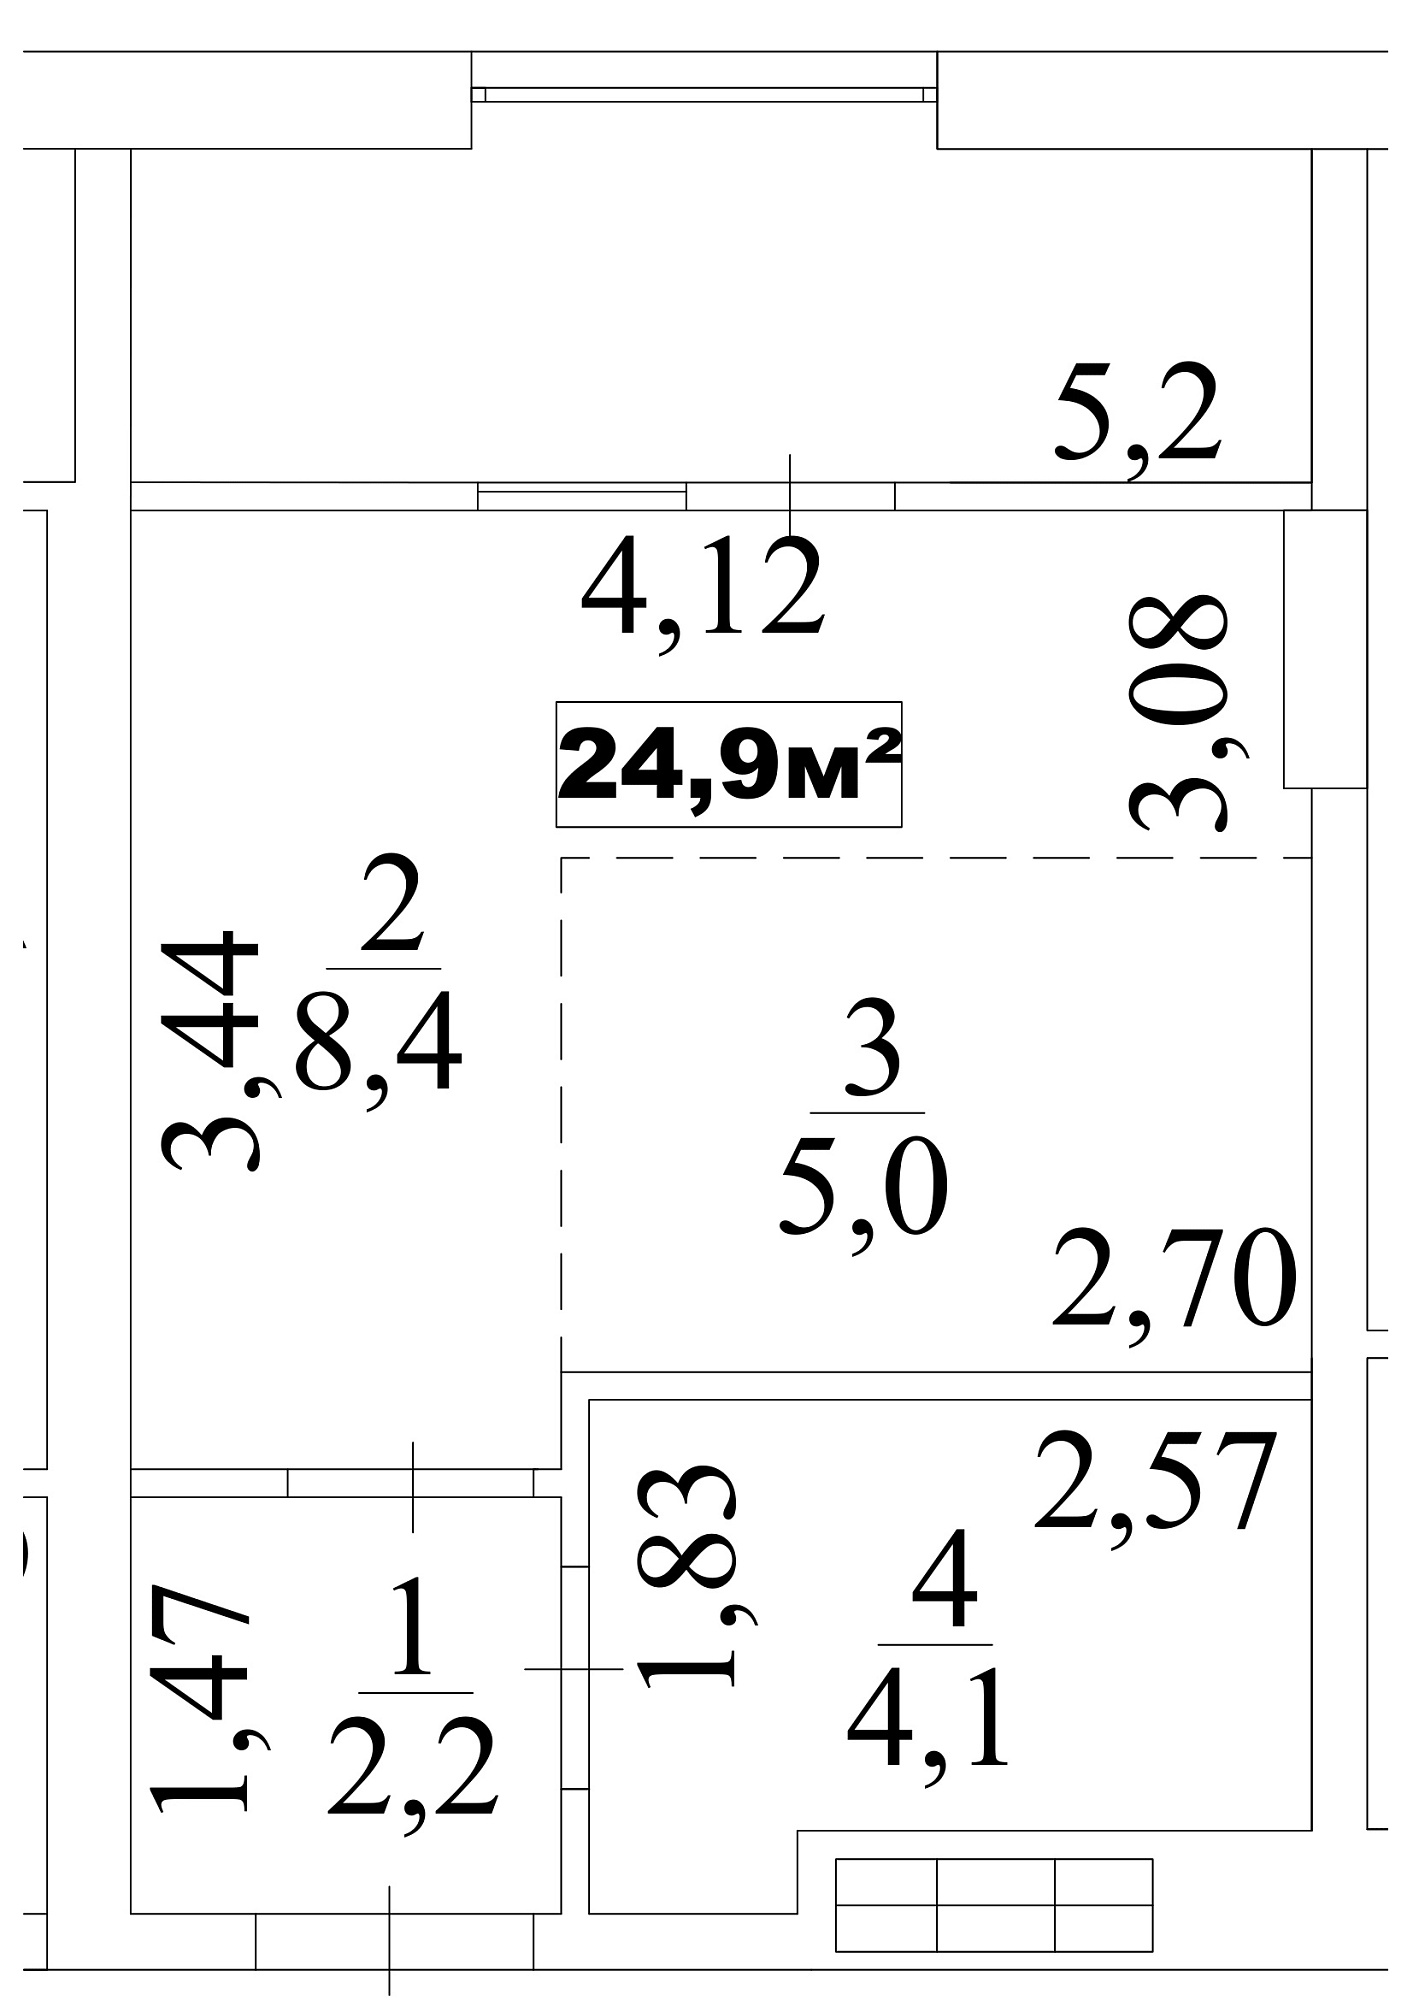 Планування Smart-квартира площею 24.9м2, AB-10-07/0057в.